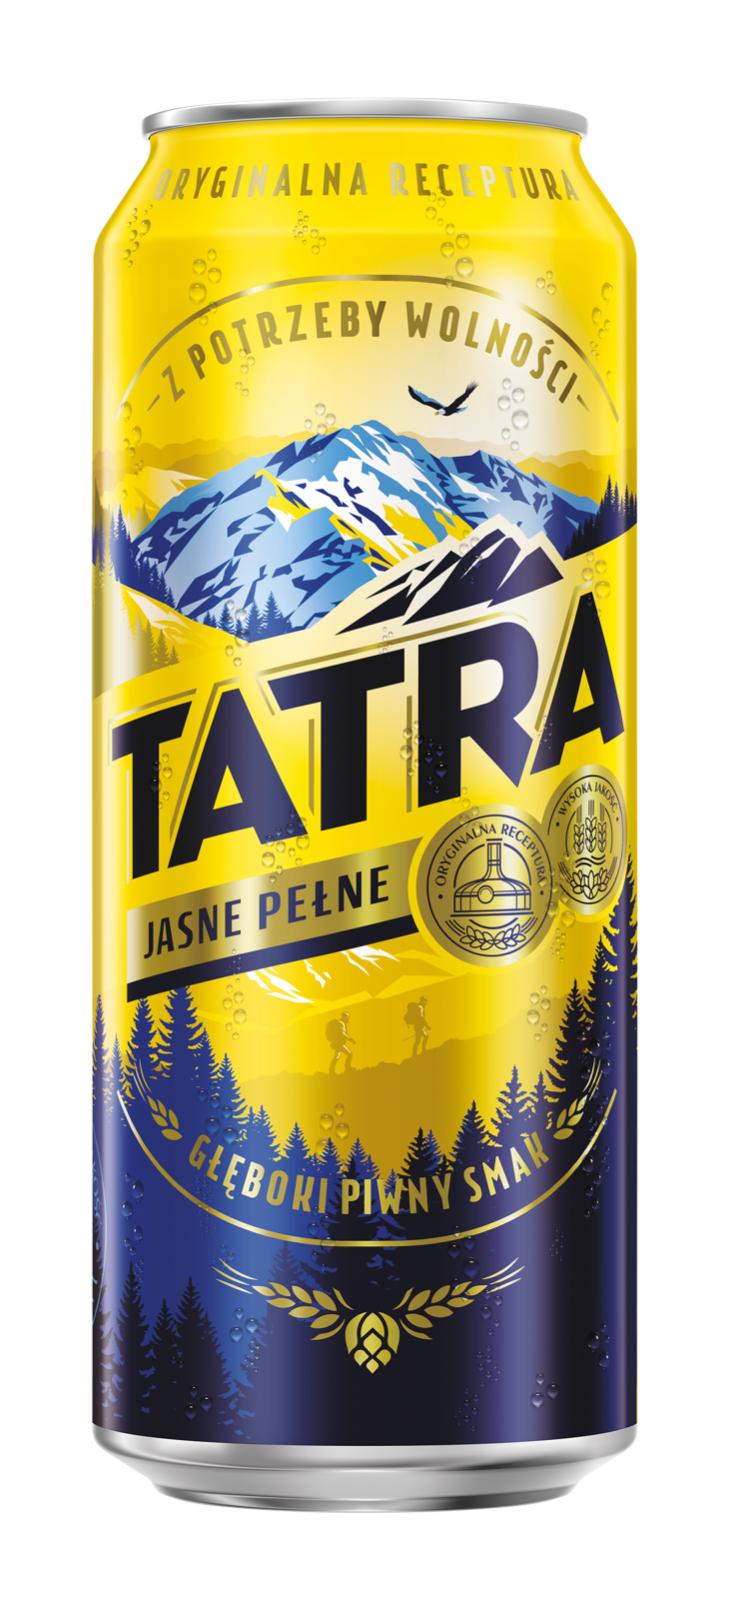 Tatra Jasne Pelne 0,5l -Das süffige Pils aus Polen mit 6% Vol.